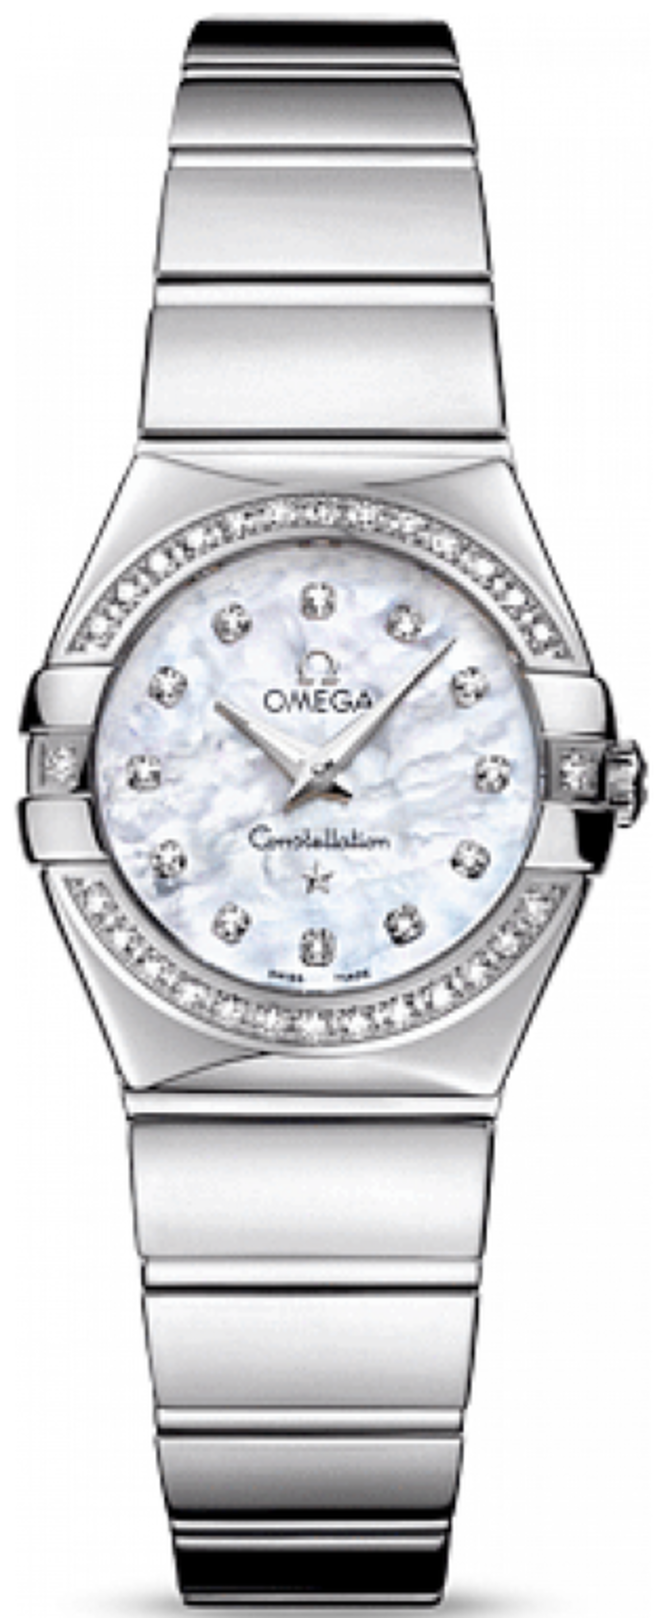 Omega 123.15.24.60.55-003 Constellation Ladies Quartz